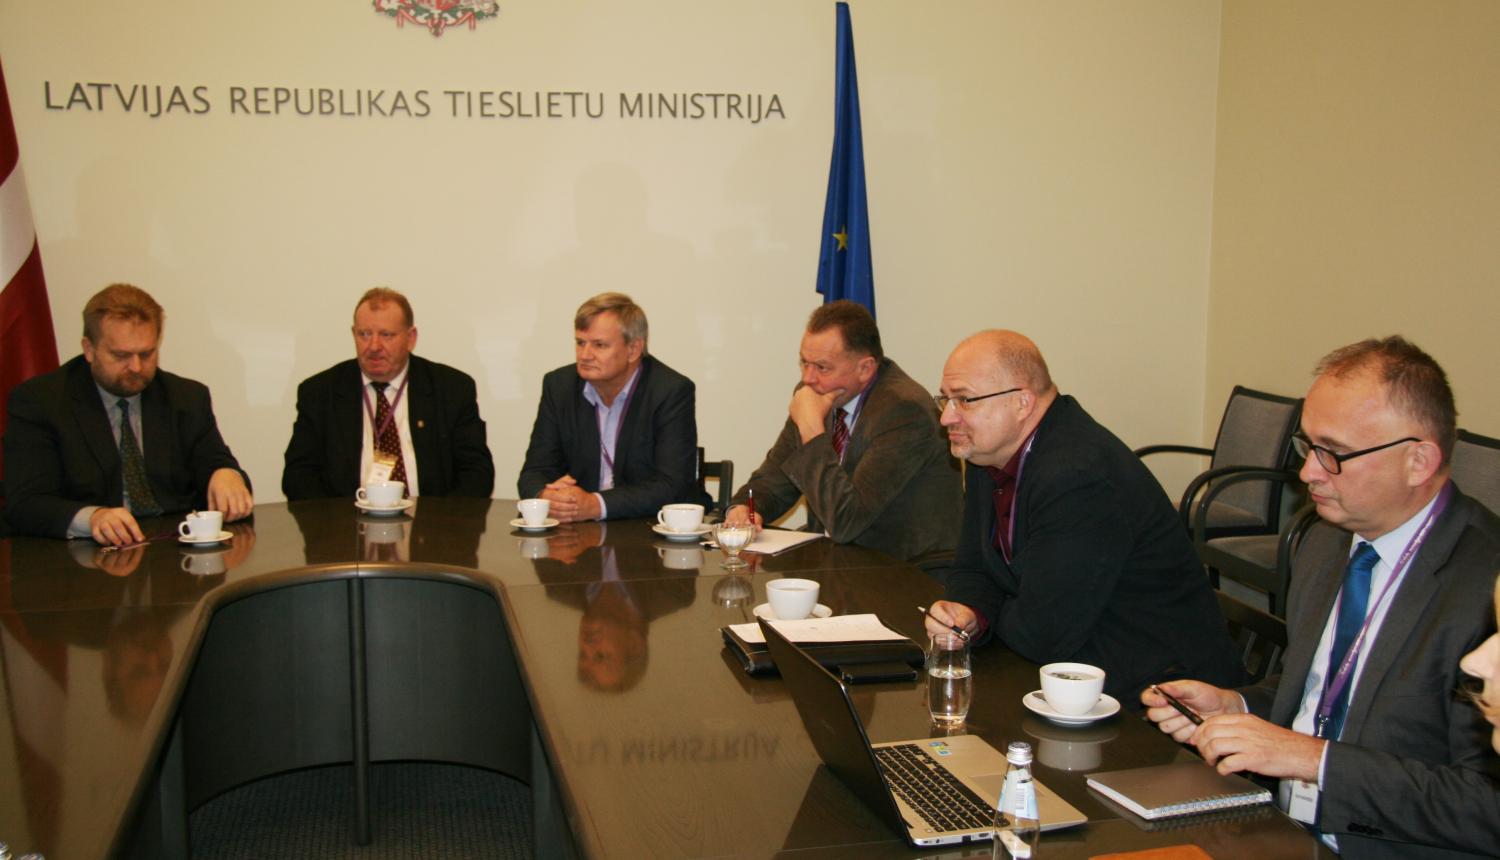 Dzintars Rasnačs: Tieslietu ministrija uzsāks aktīvāku sadarbību ar pašvaldībām